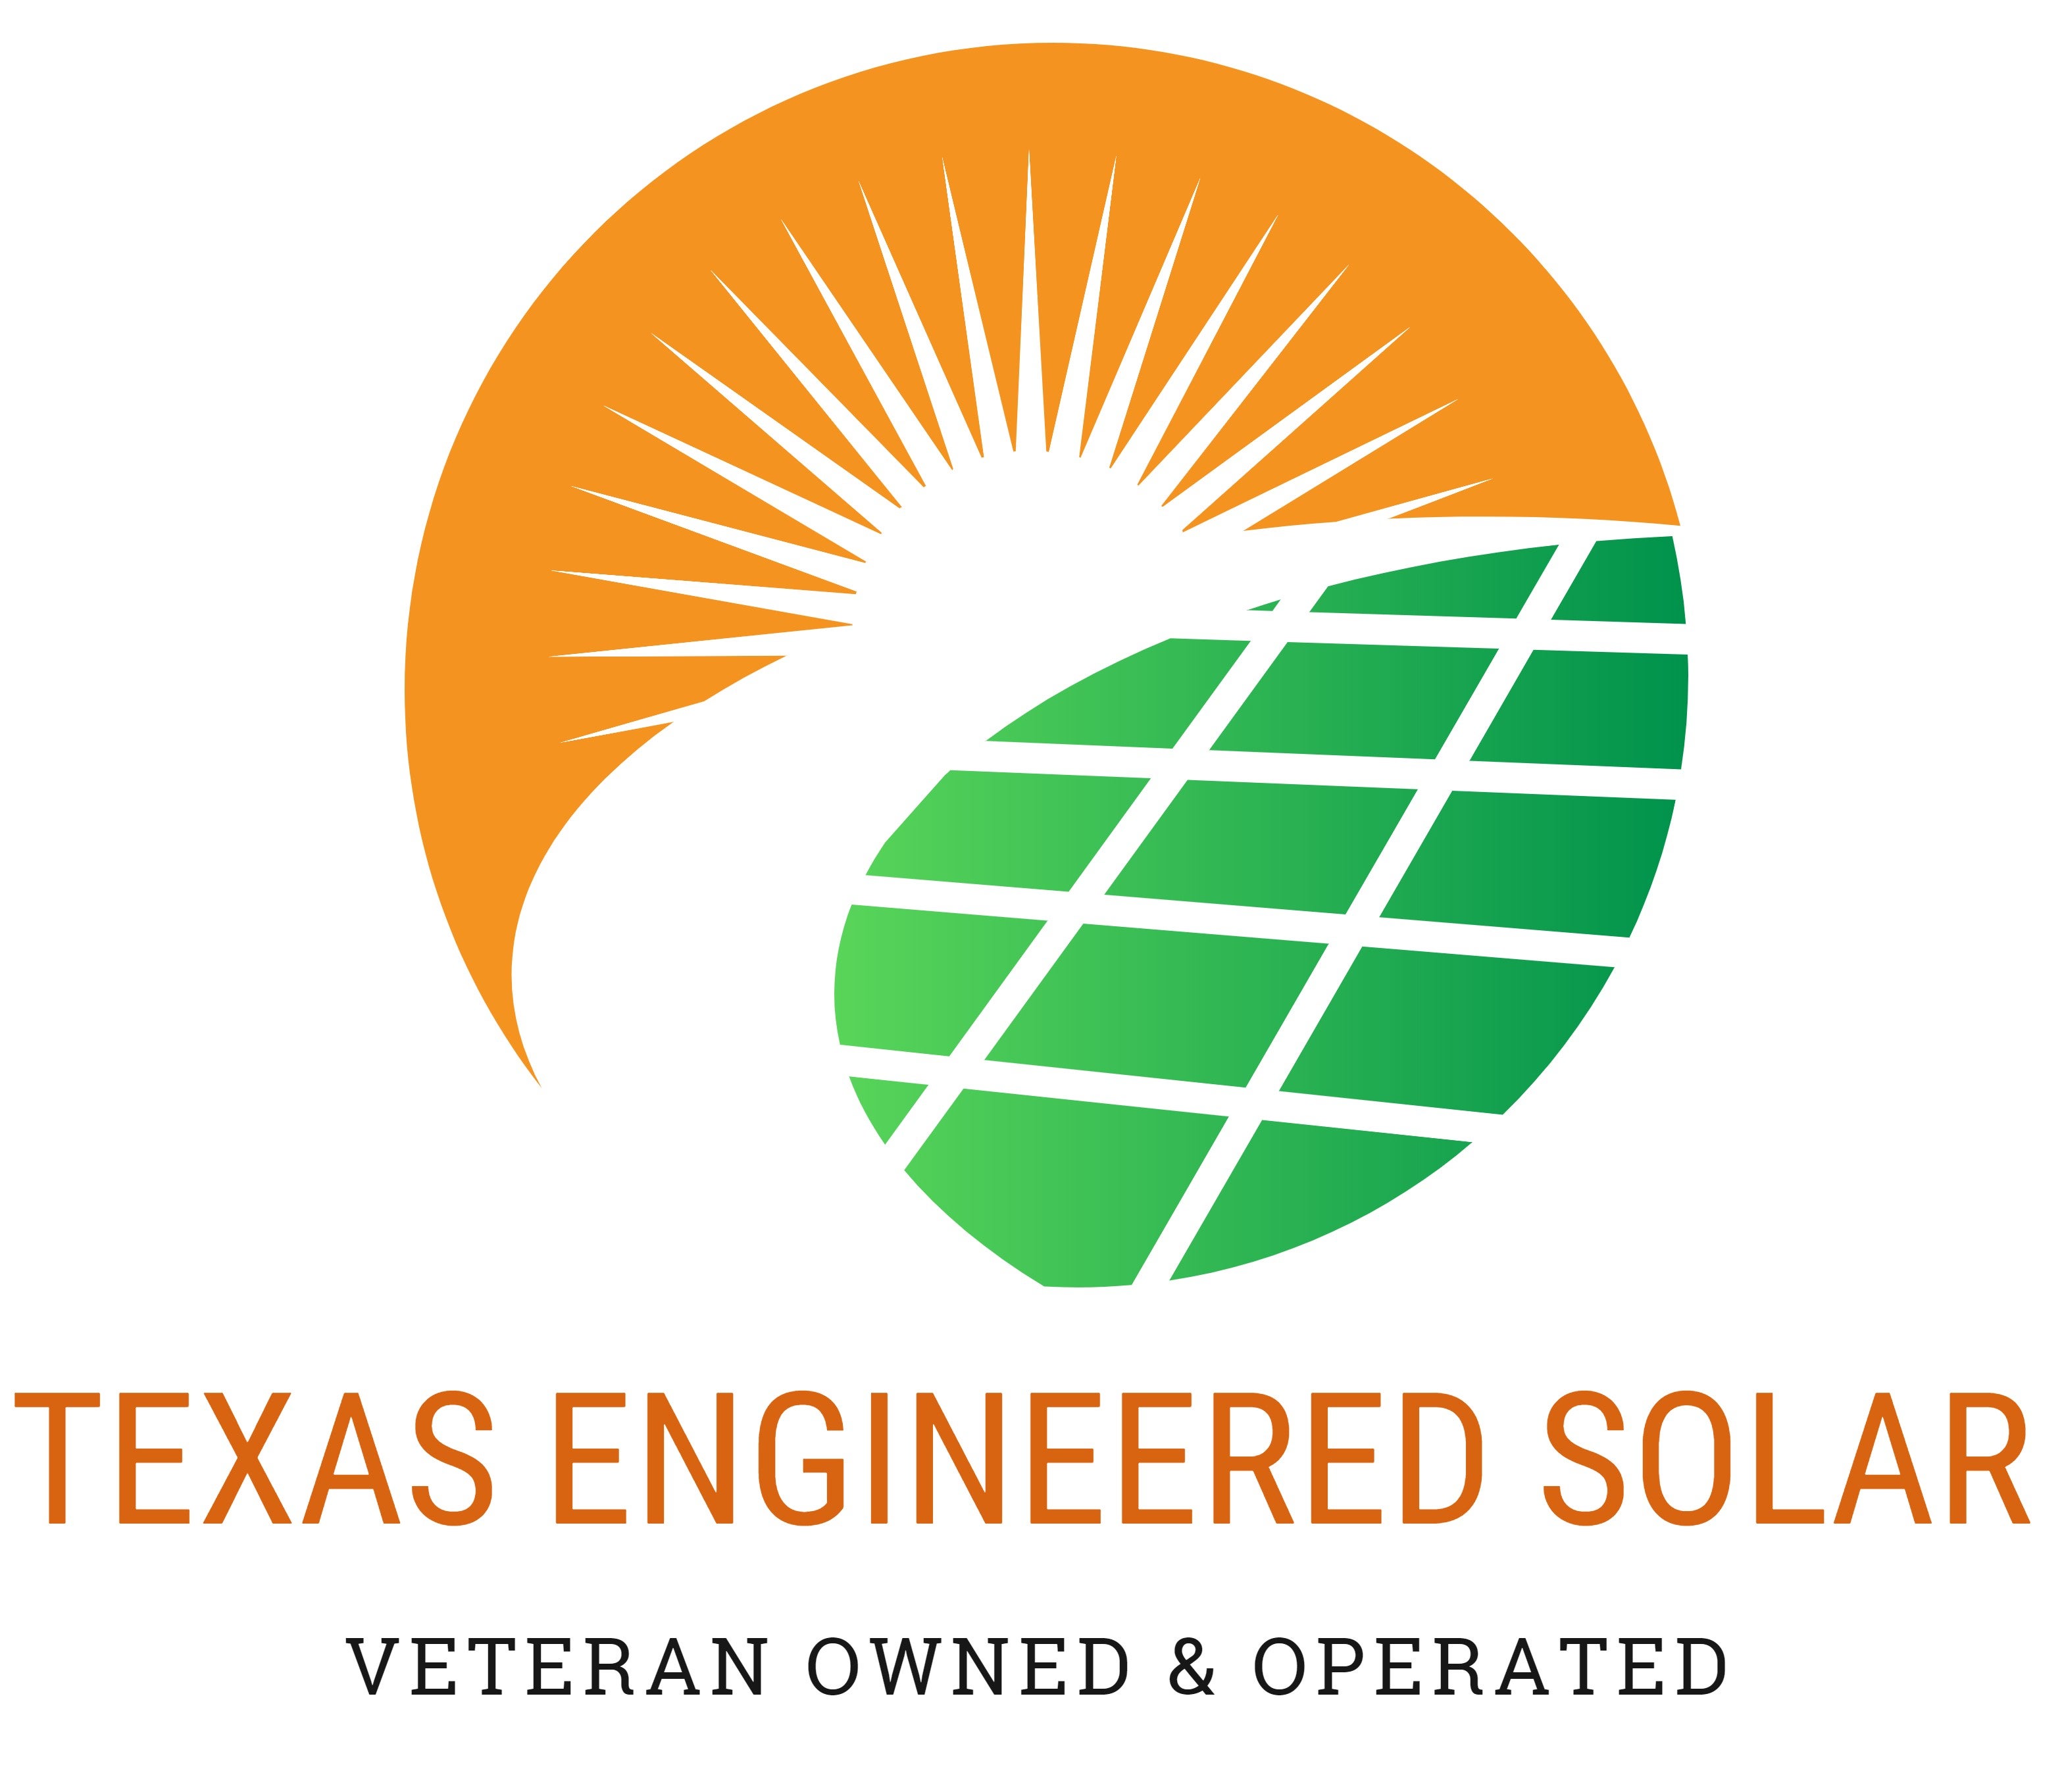 Texas Engineered Solar